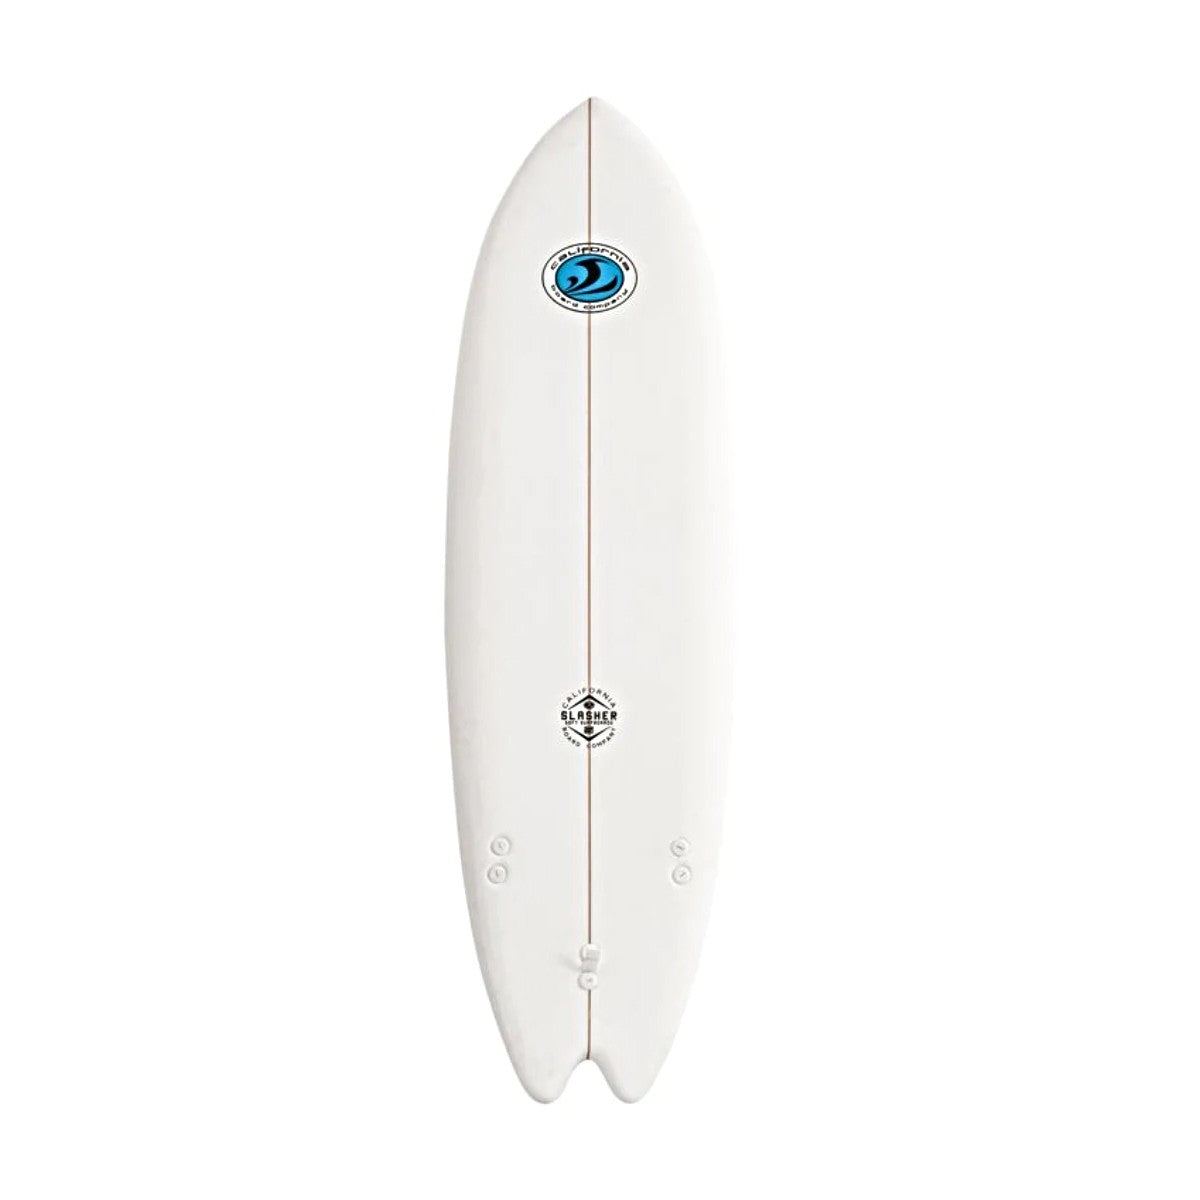 CBC - Planche de surf en mousse -Slasher - 6'2